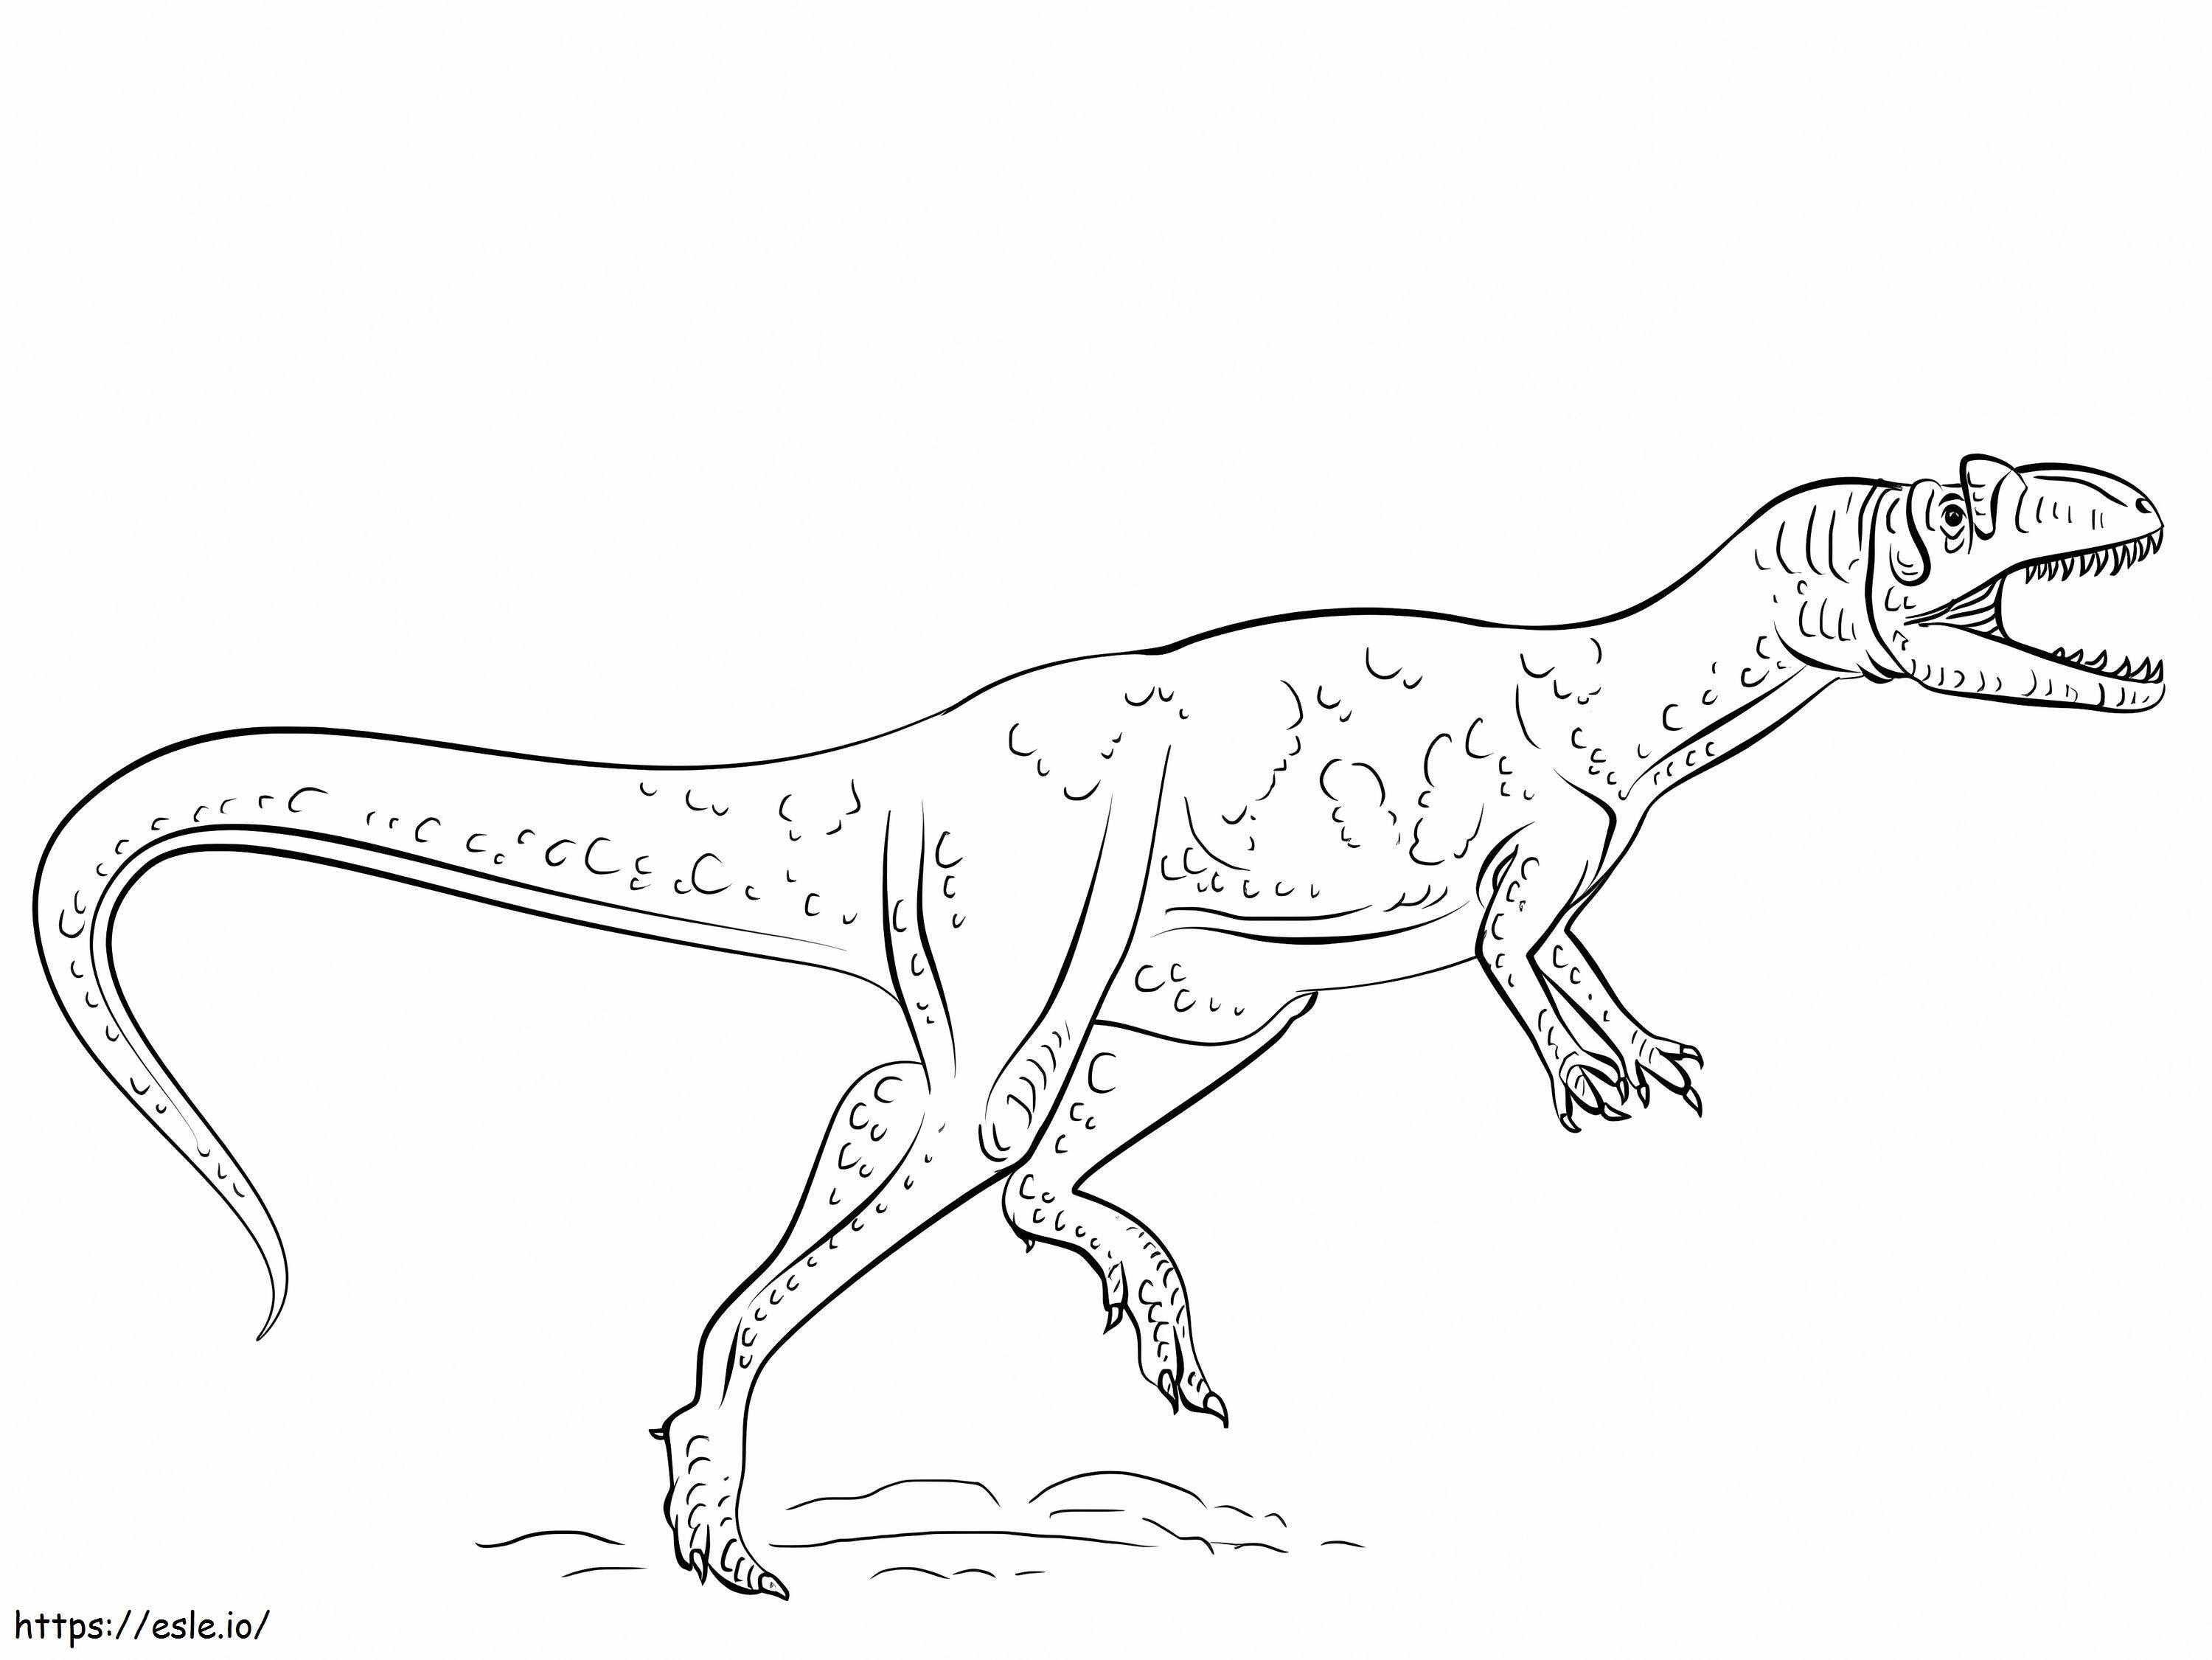 Dinossauro Alossauro para colorir